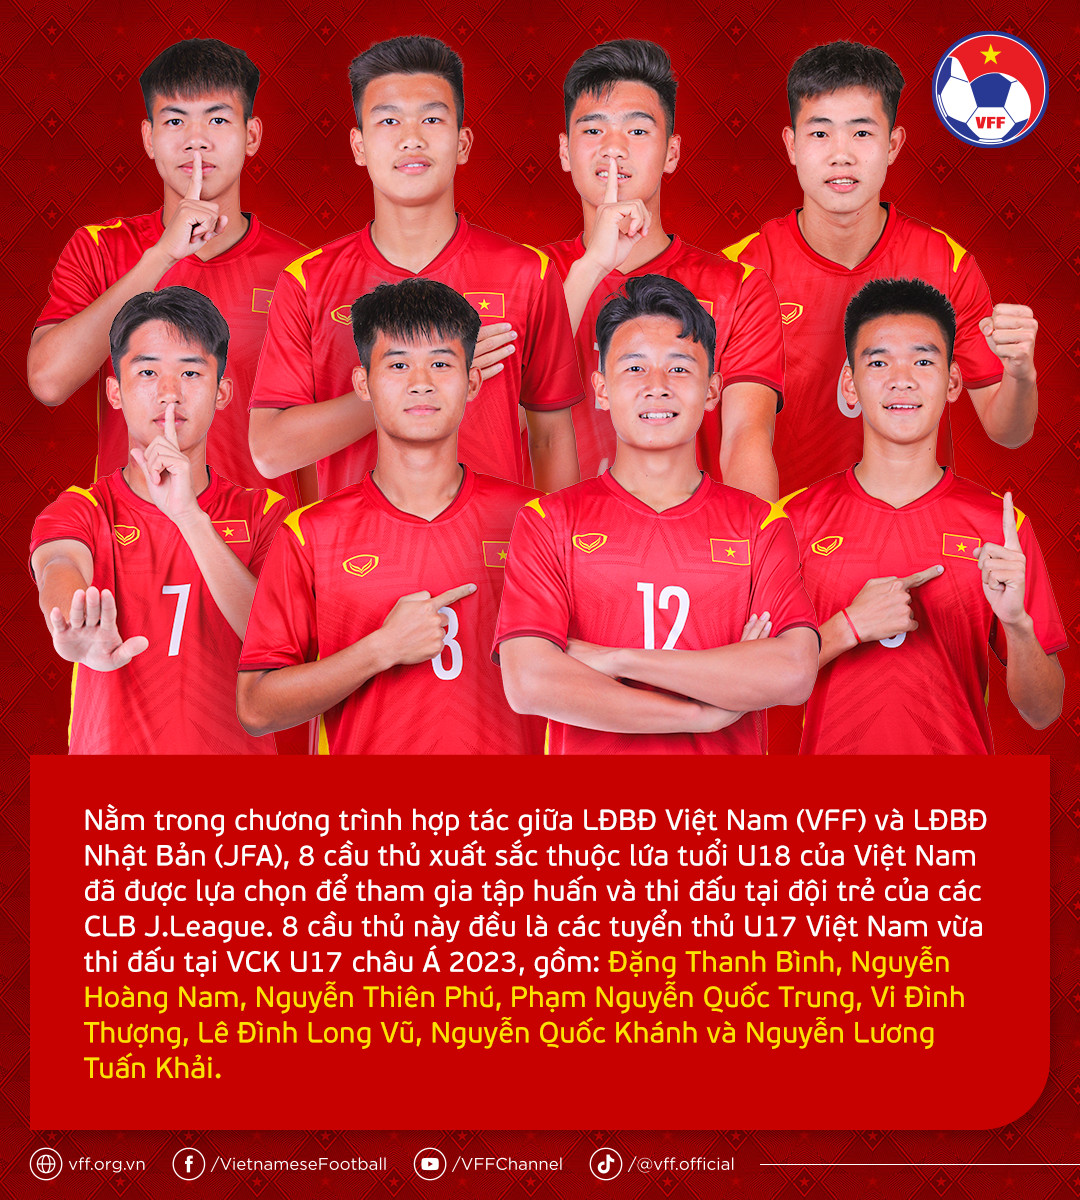 8 tuyển thủ U18 Việt Nam sang J-League - Bóng Đá